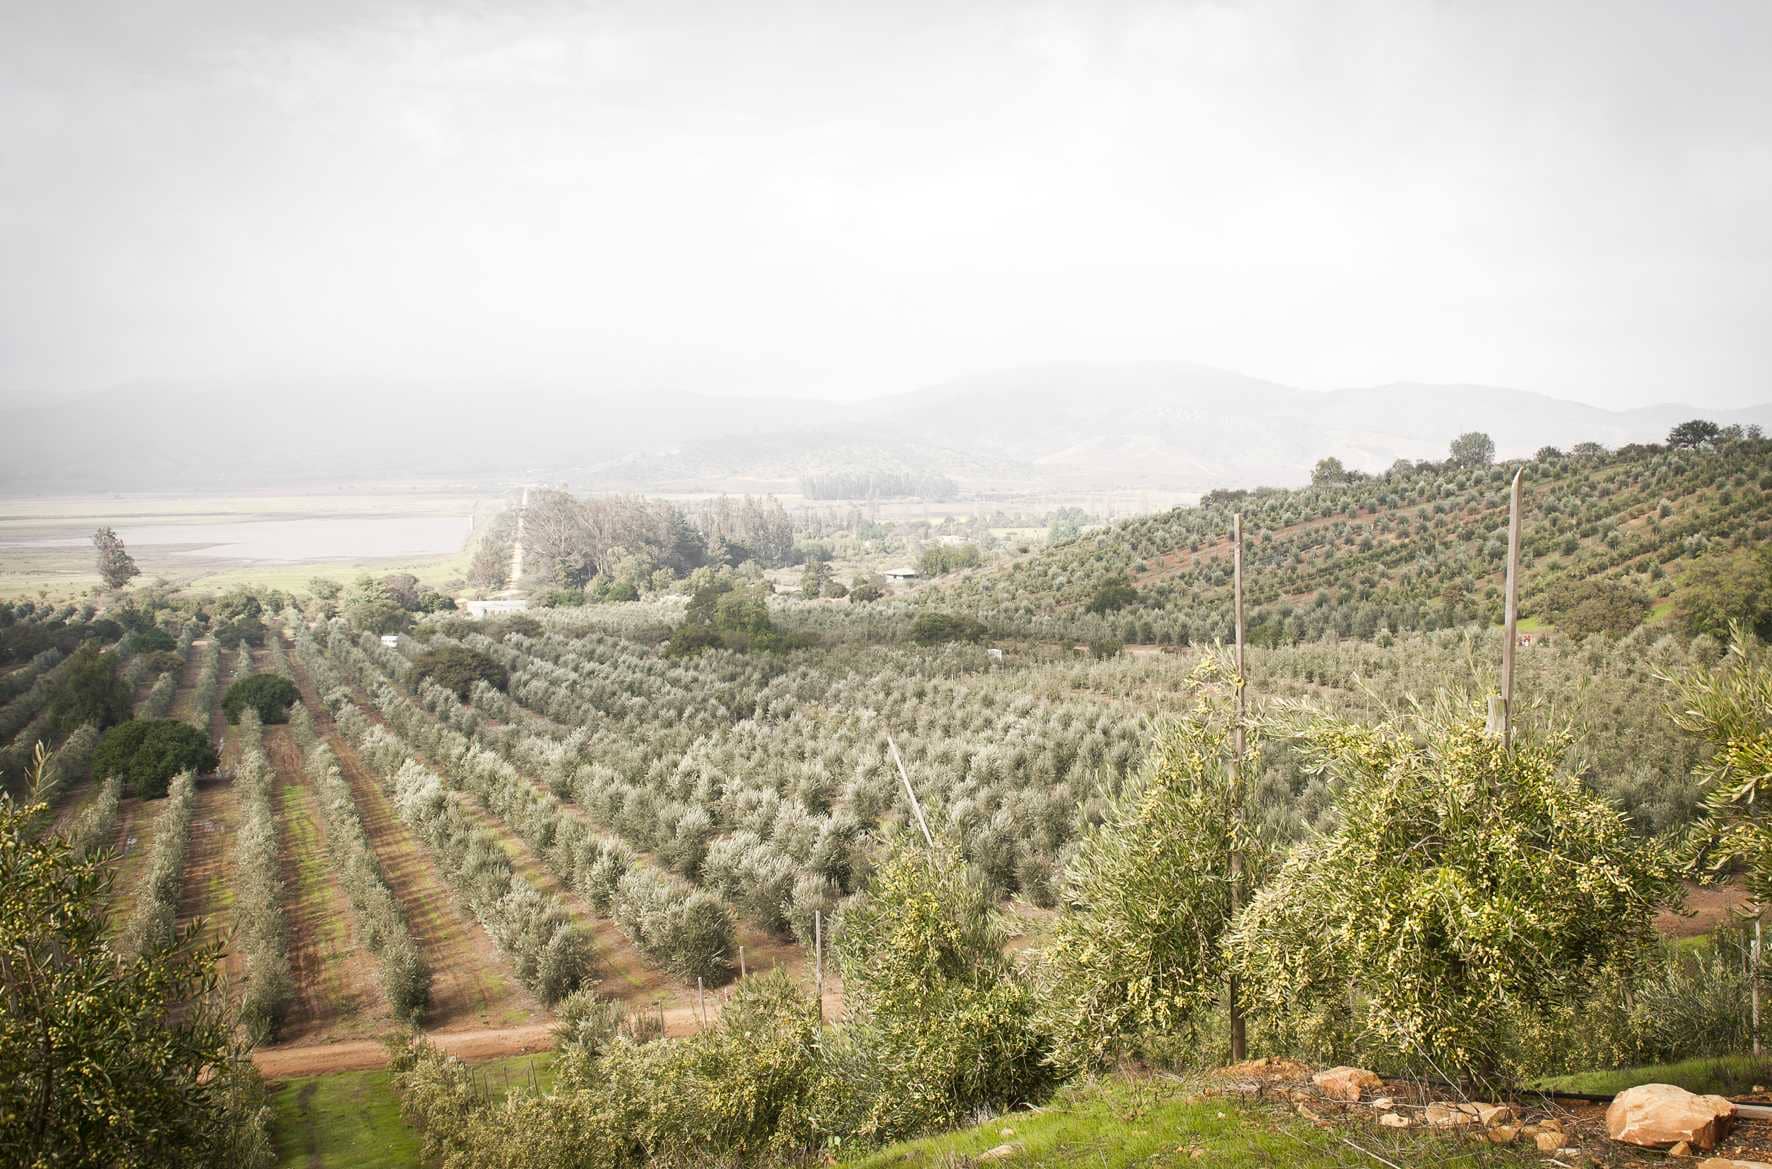 Южная-Америка-лучшие-конкурсы-оливкового масла-южно-американские-производители-празднуют-nyiooc-победы-после-тяжелого-года-времен-оливкового масла